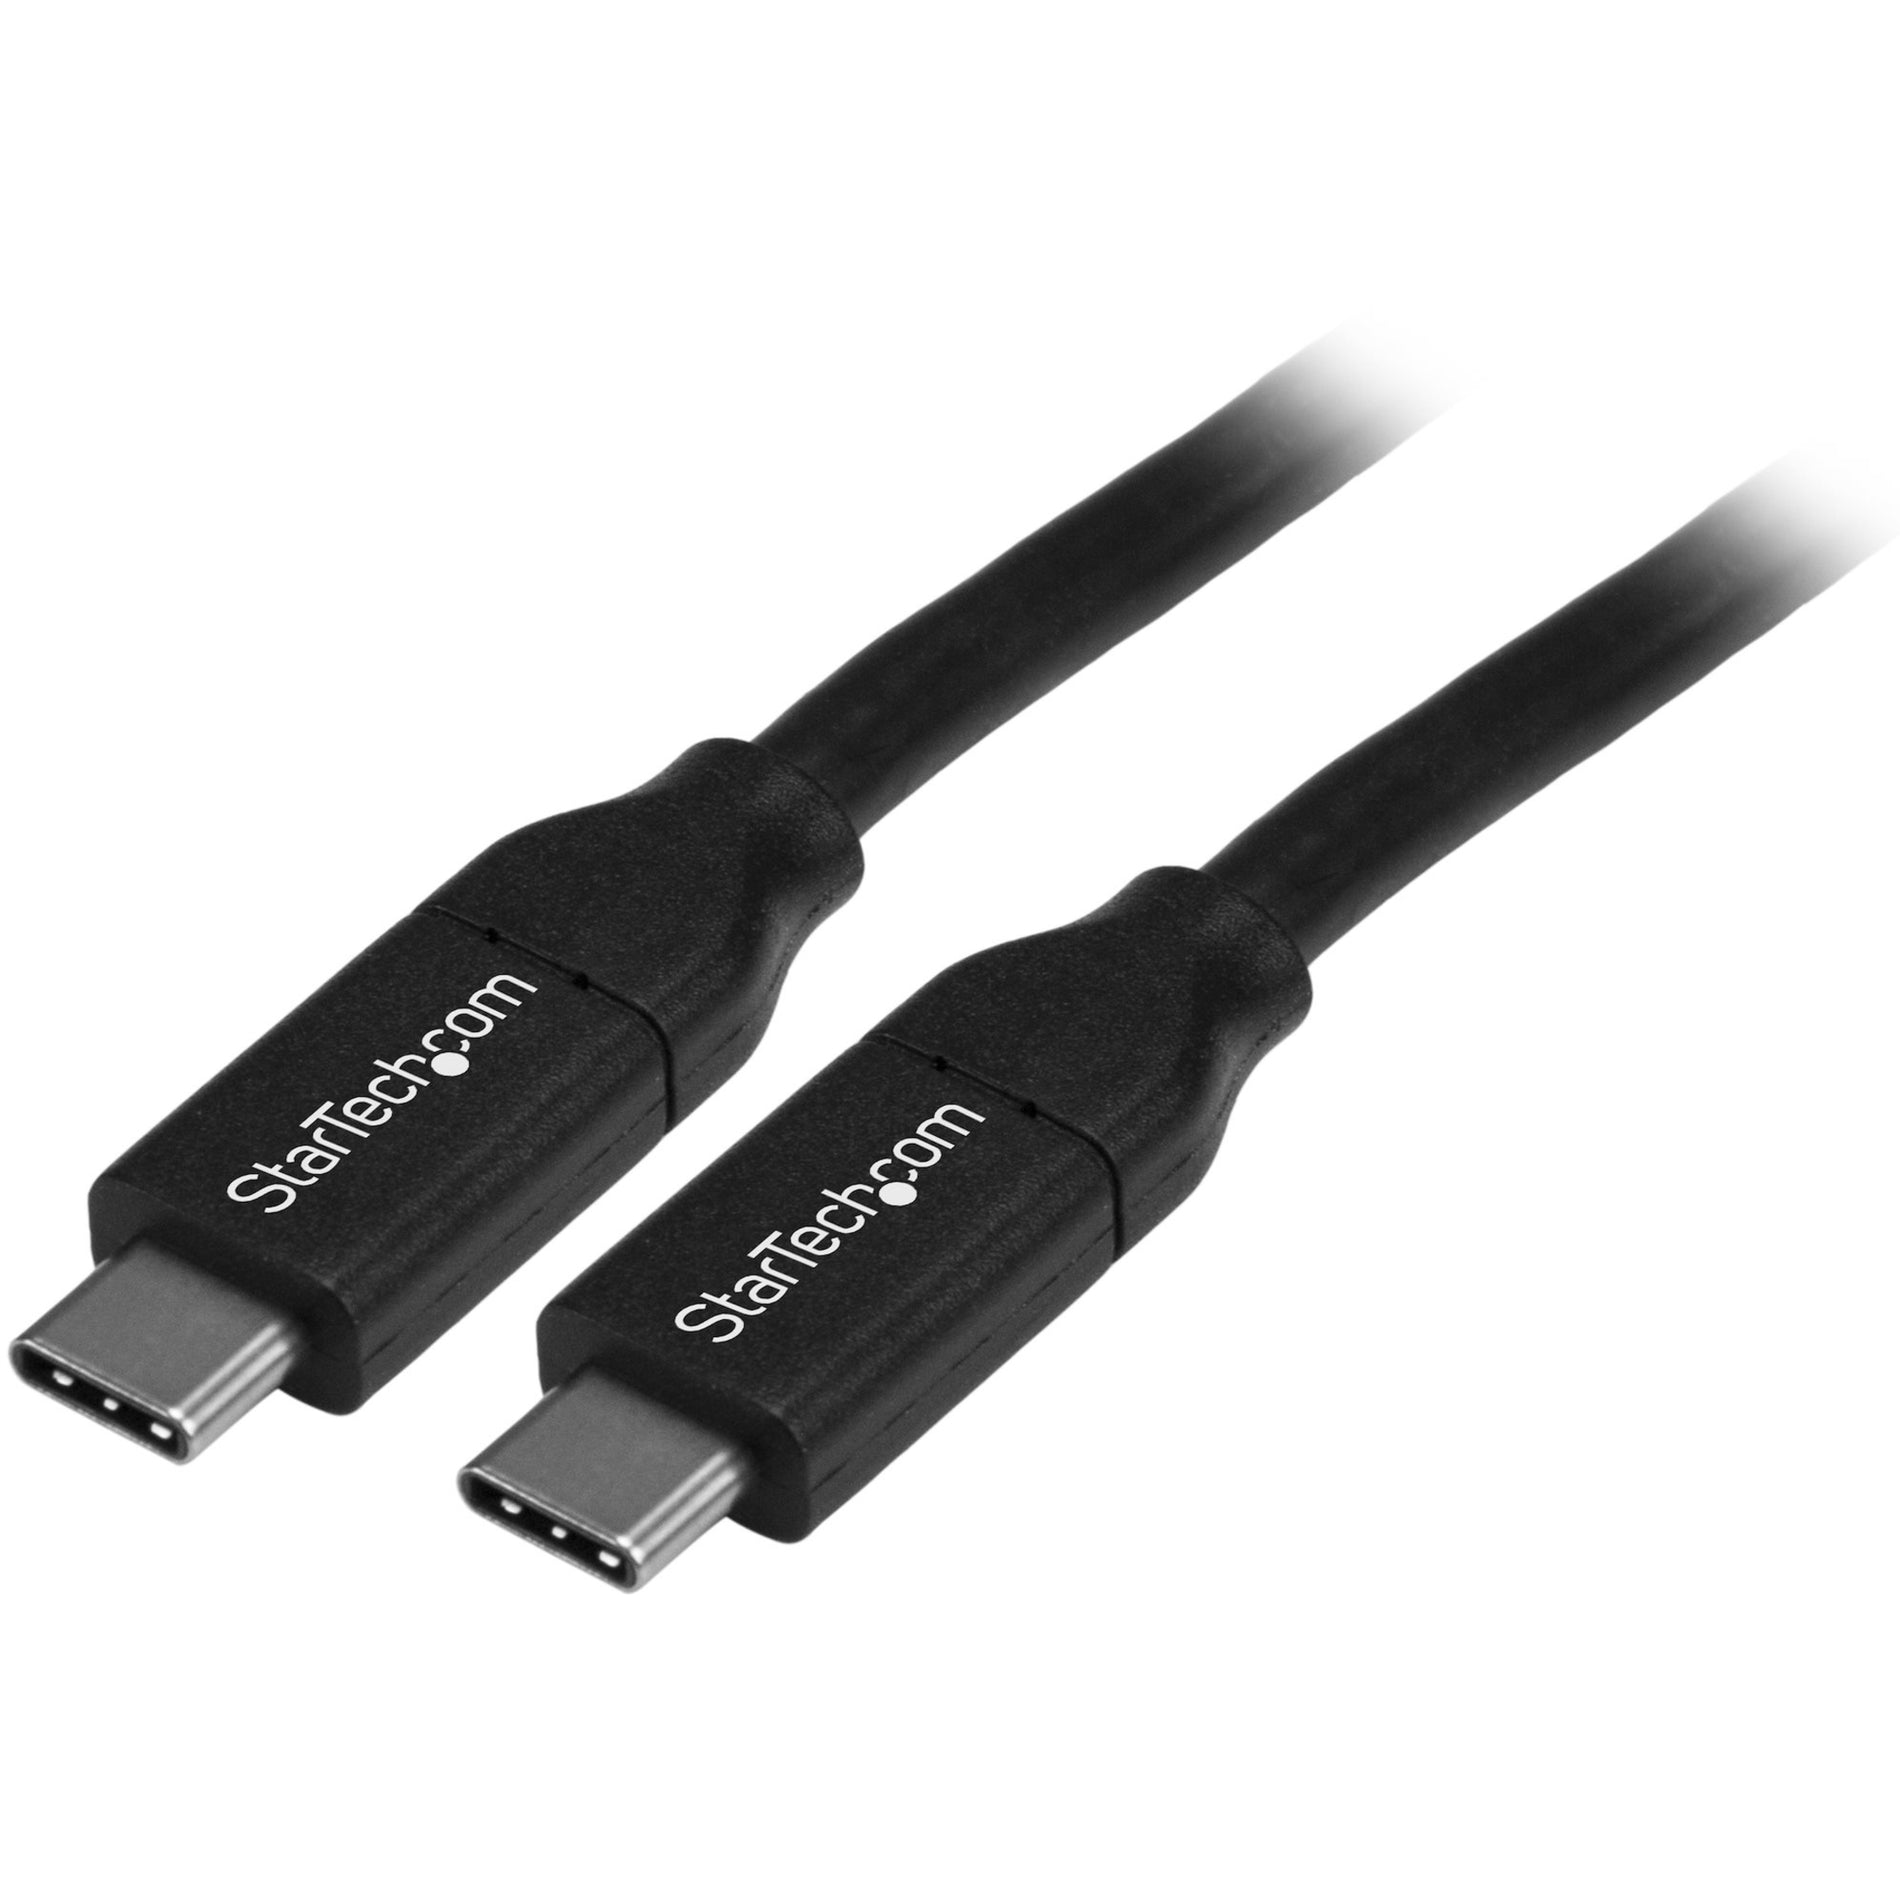 StarTech.com USB2C5C4M USB-C Cable, 13.12 ft, Charging, Black